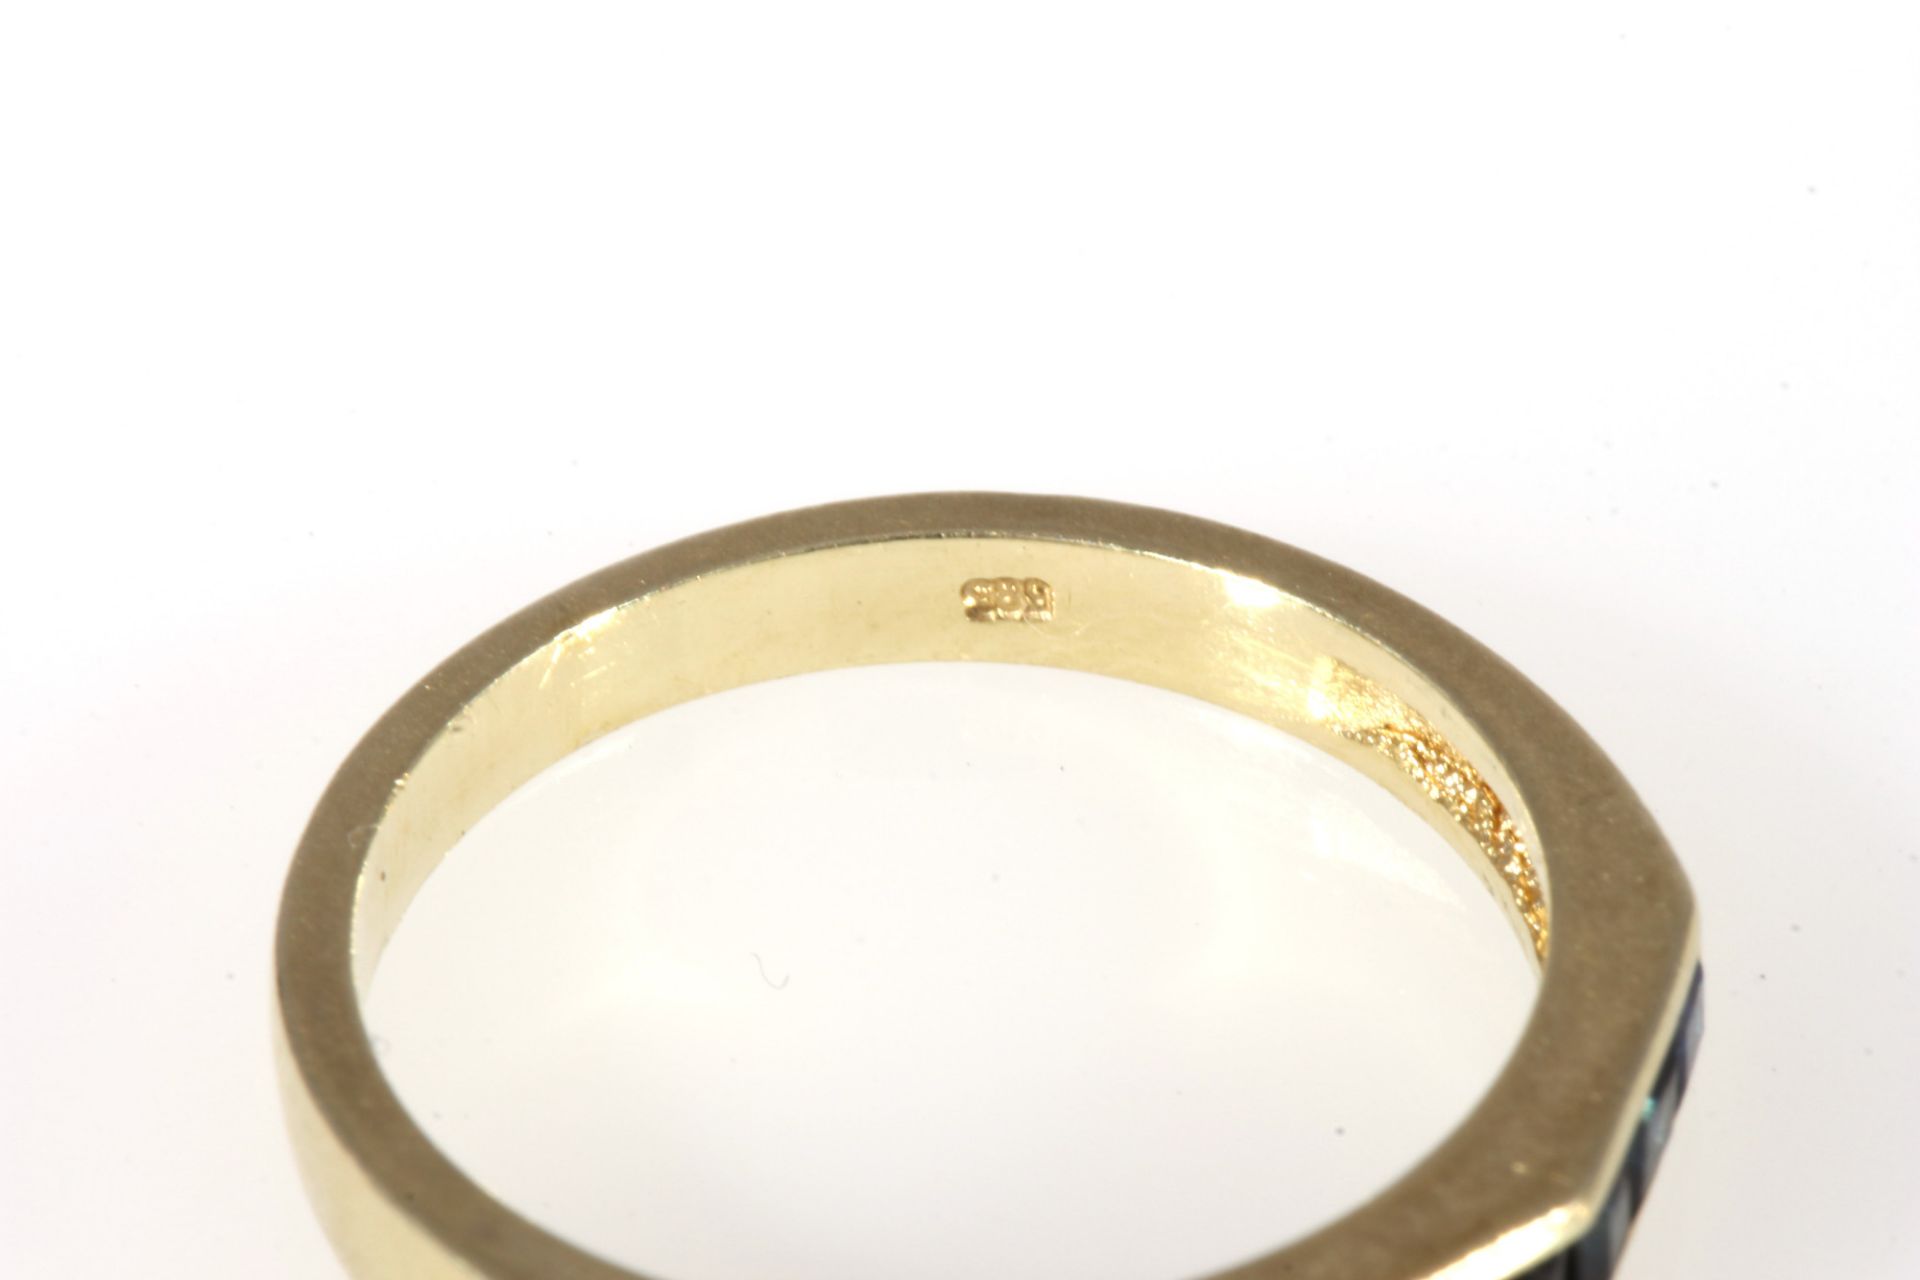 585 Gold 2 Ringe mit Saphiren, 14K gold 2 rings with sapphires, - Bild 5 aus 5